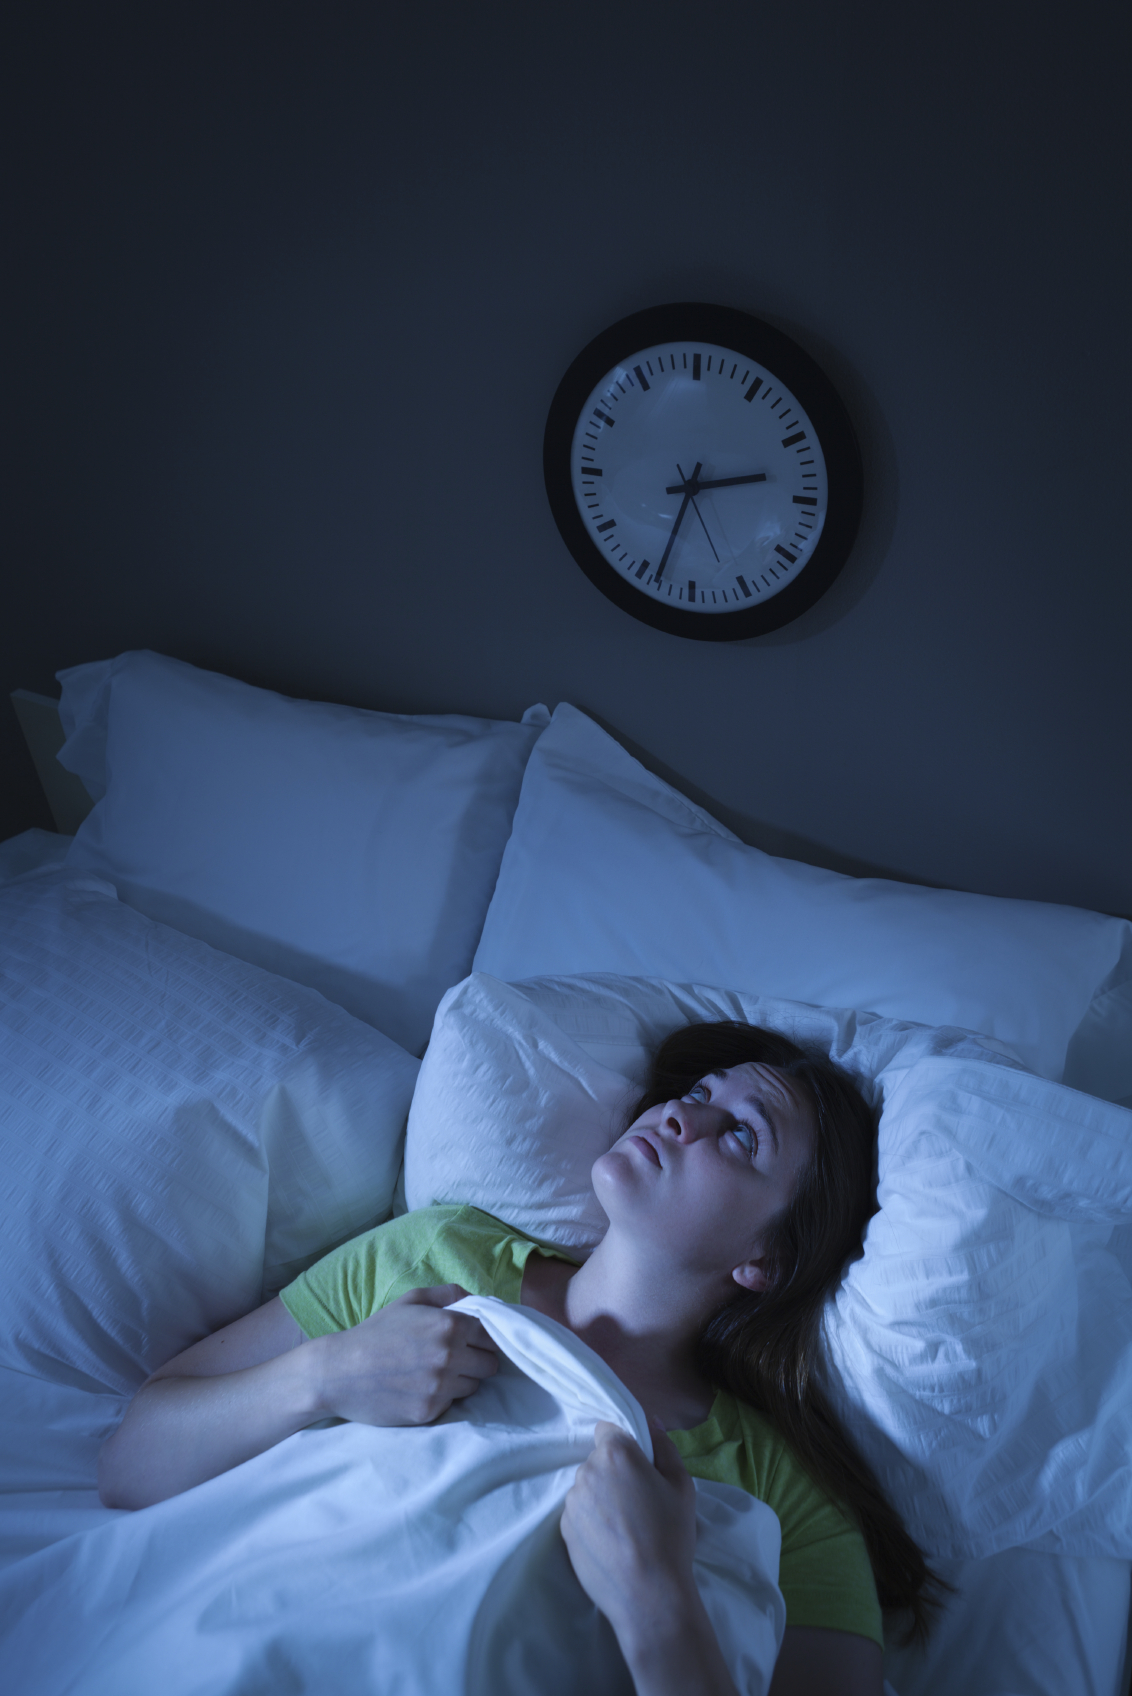 Τα προβλήματα ύπνου ίσως οδηγούν σε αναβλητική συμπεριφορά